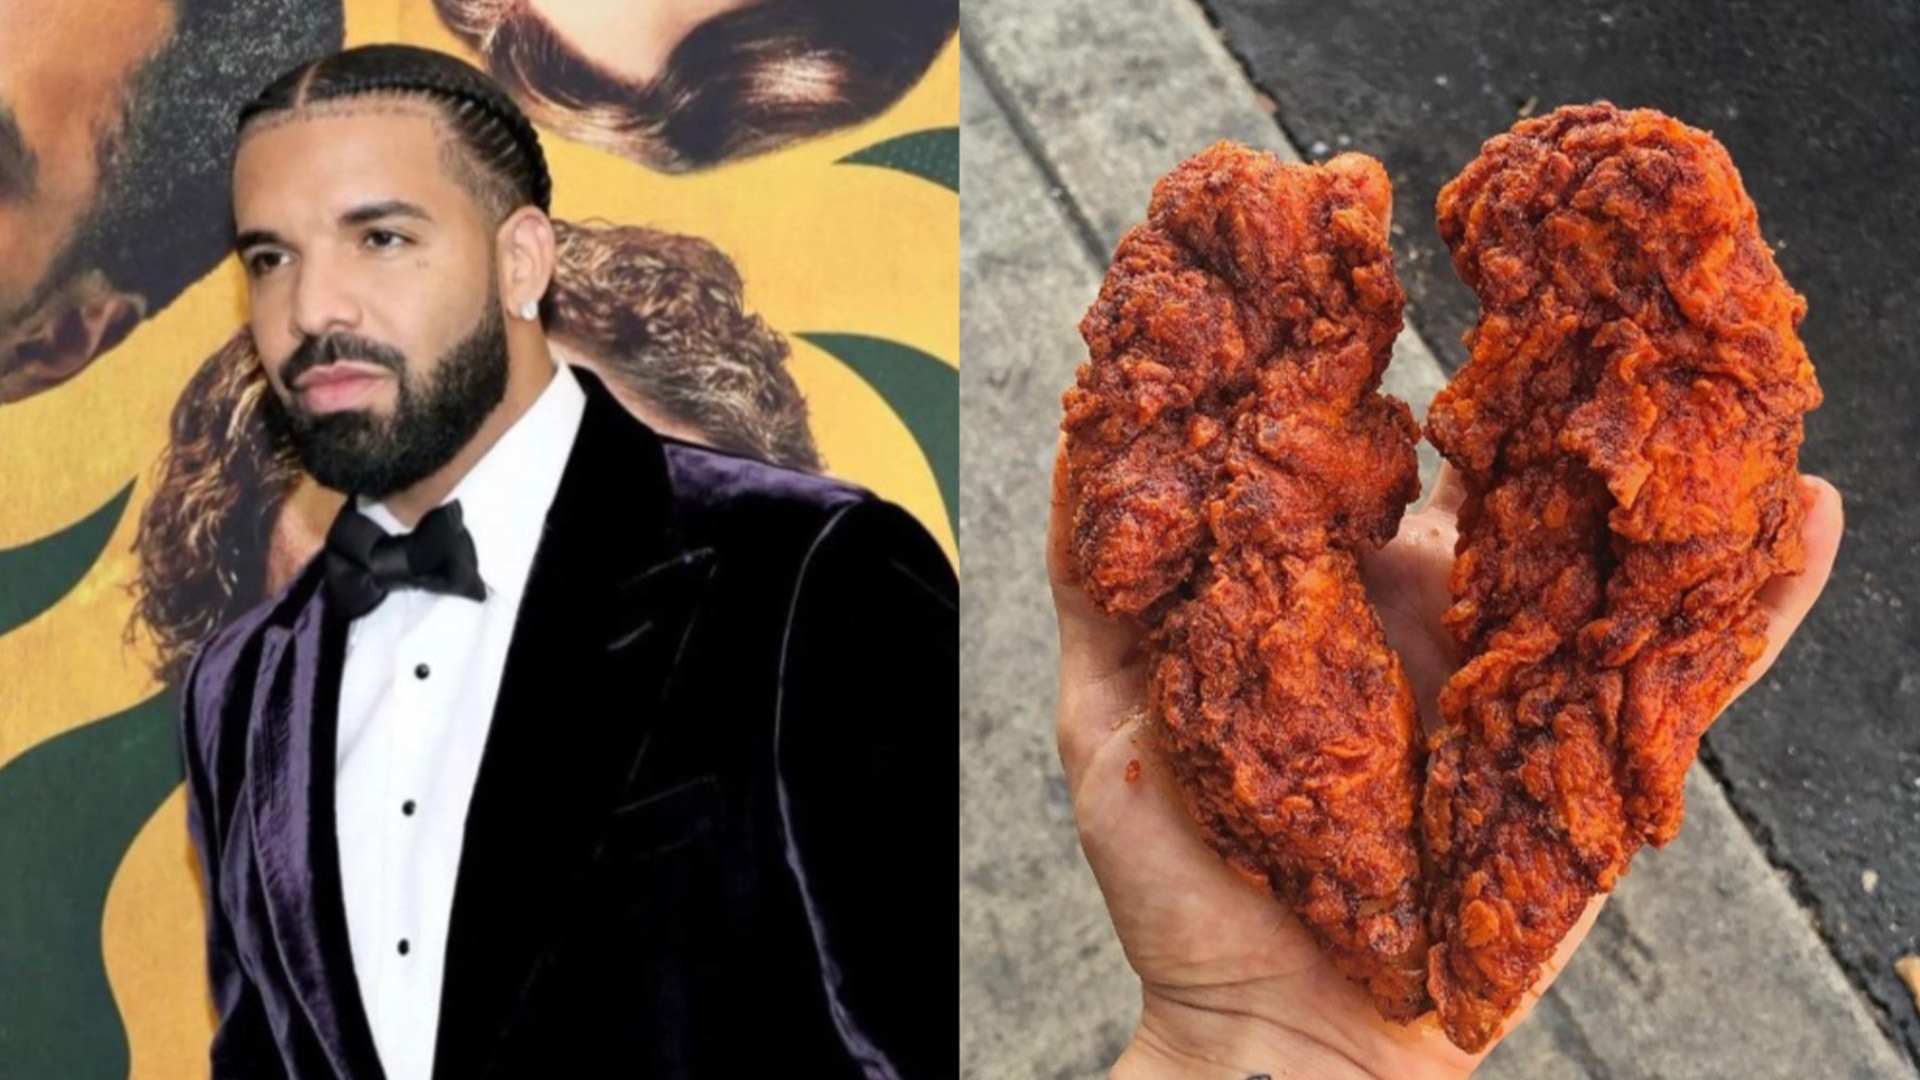 Le célèbre rappeur canadien Drake a décidé de s’associer à un restaurant connu de Toronto afin d’offrir du poulet gratuit pour célébrer son anniversaire, lundi.  